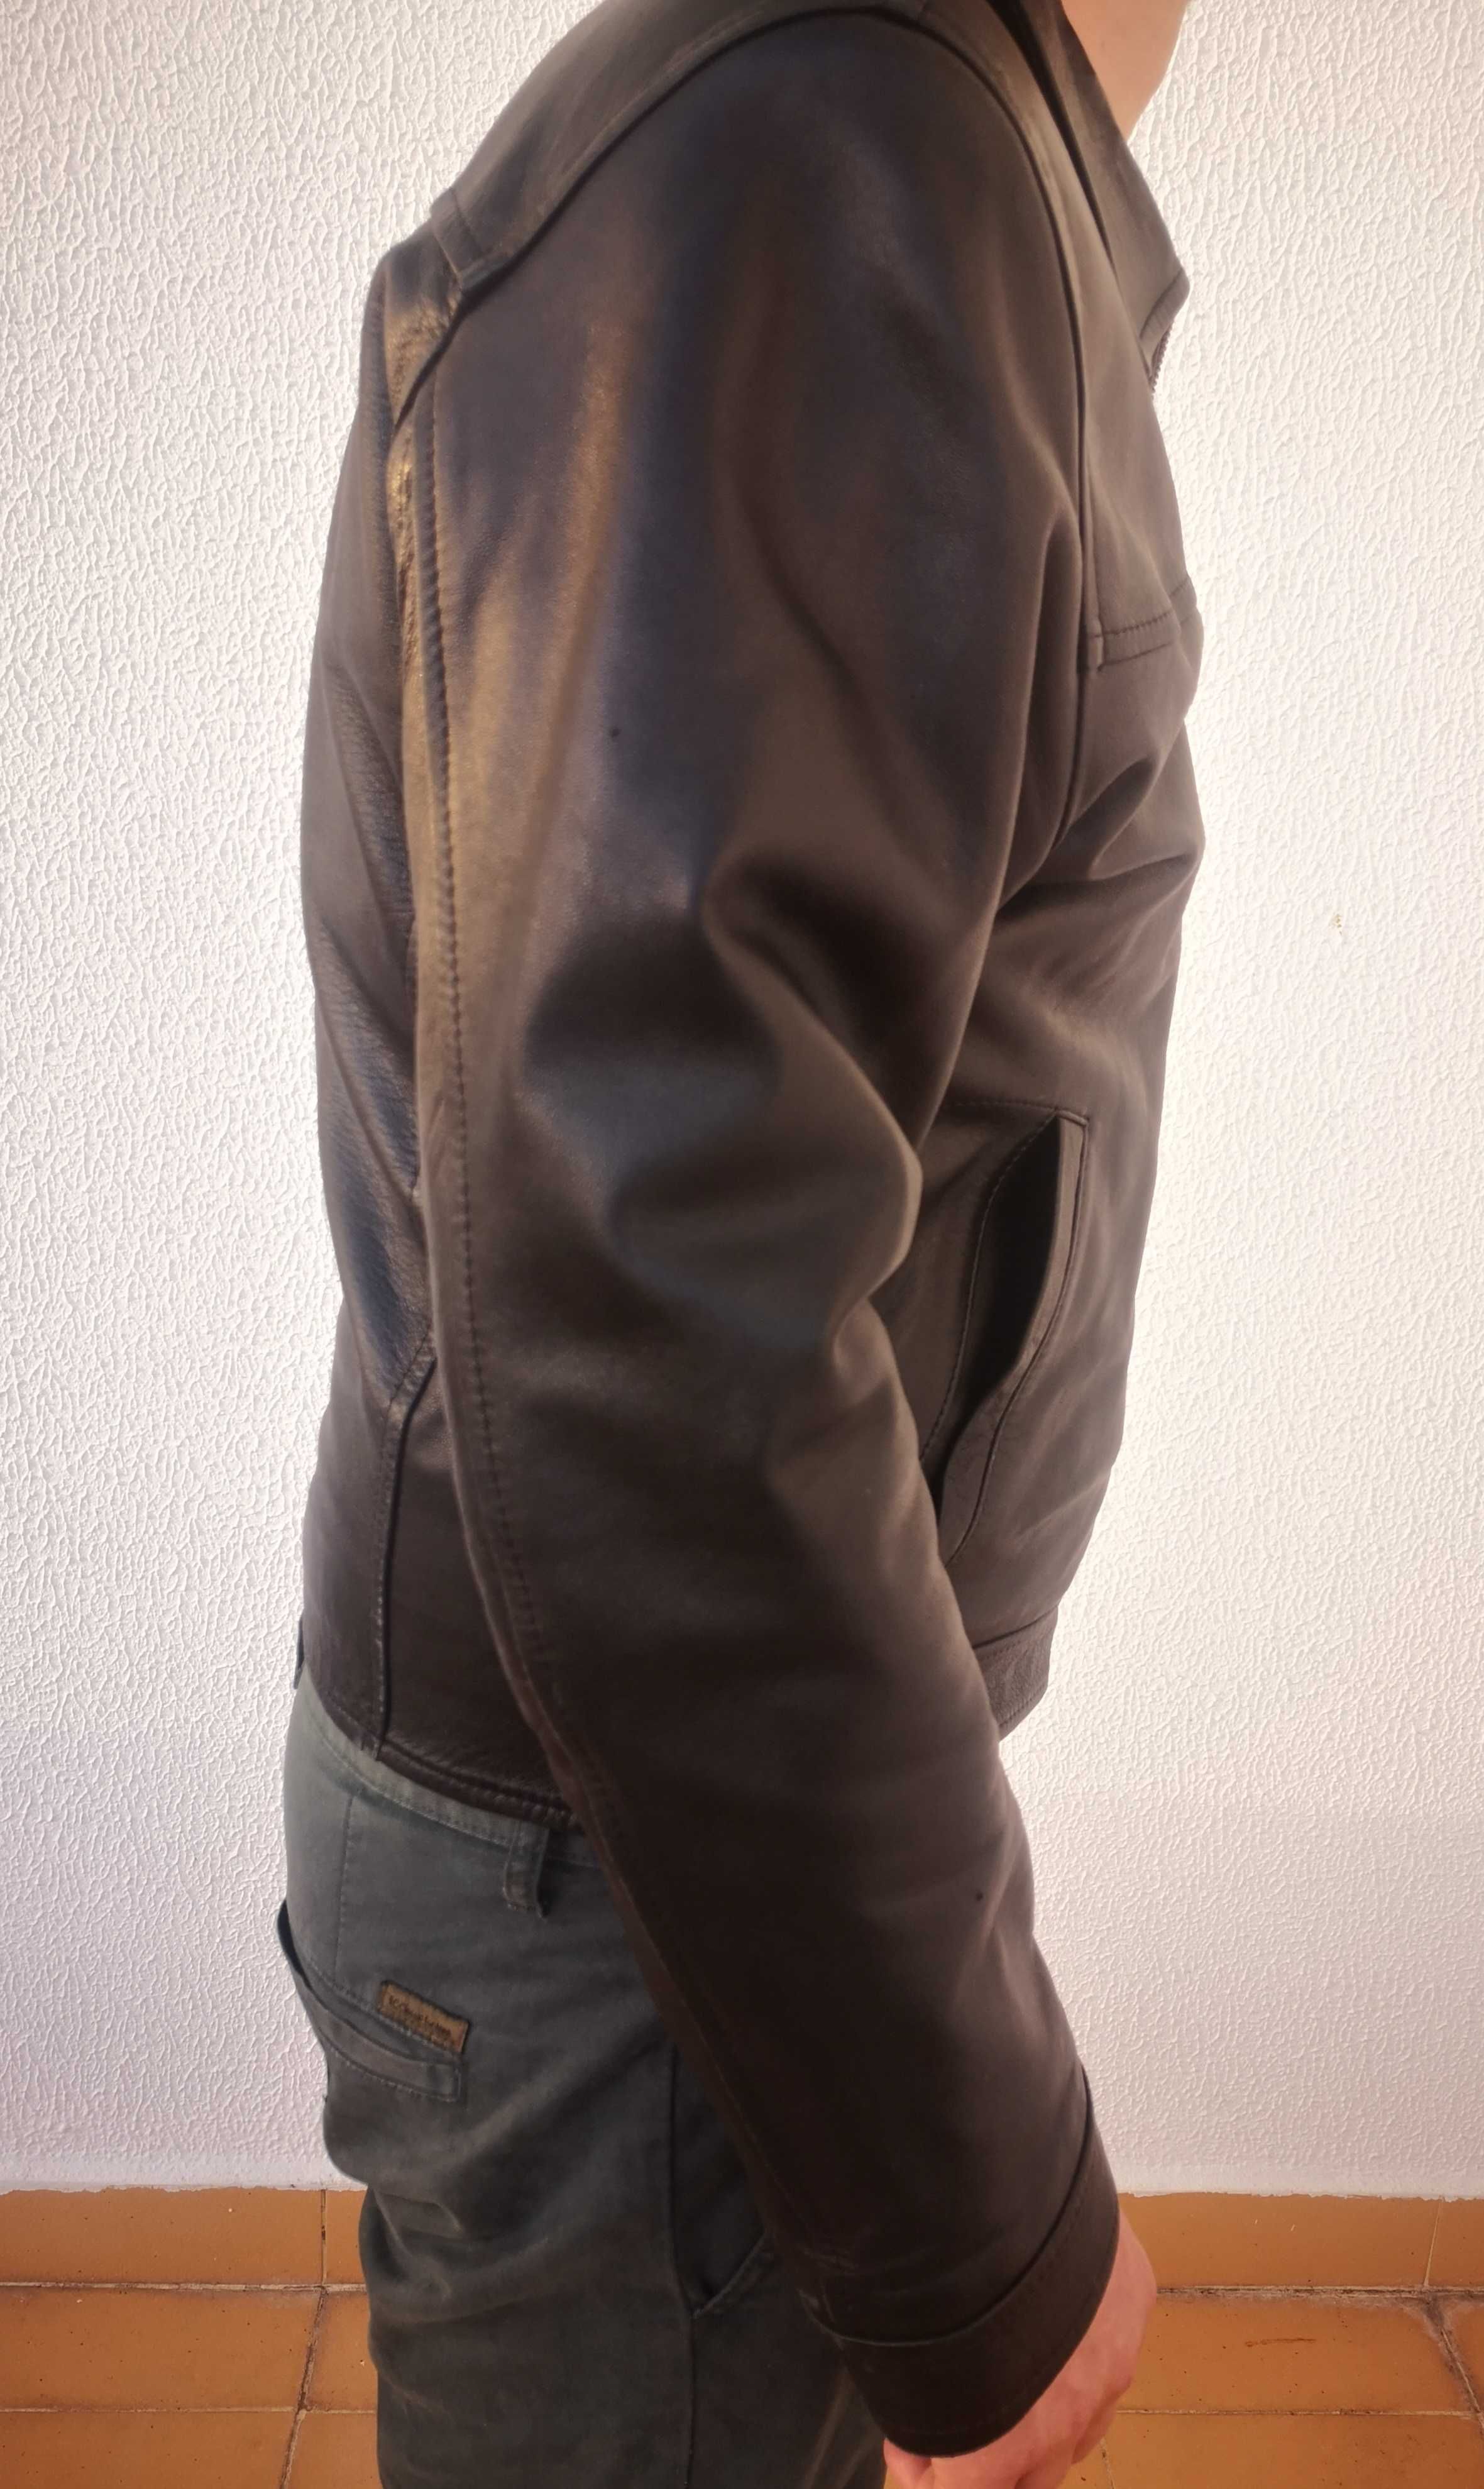 Casaco preto de pele genuína-Homem- Tamanho 50-Fabricado em Portugal